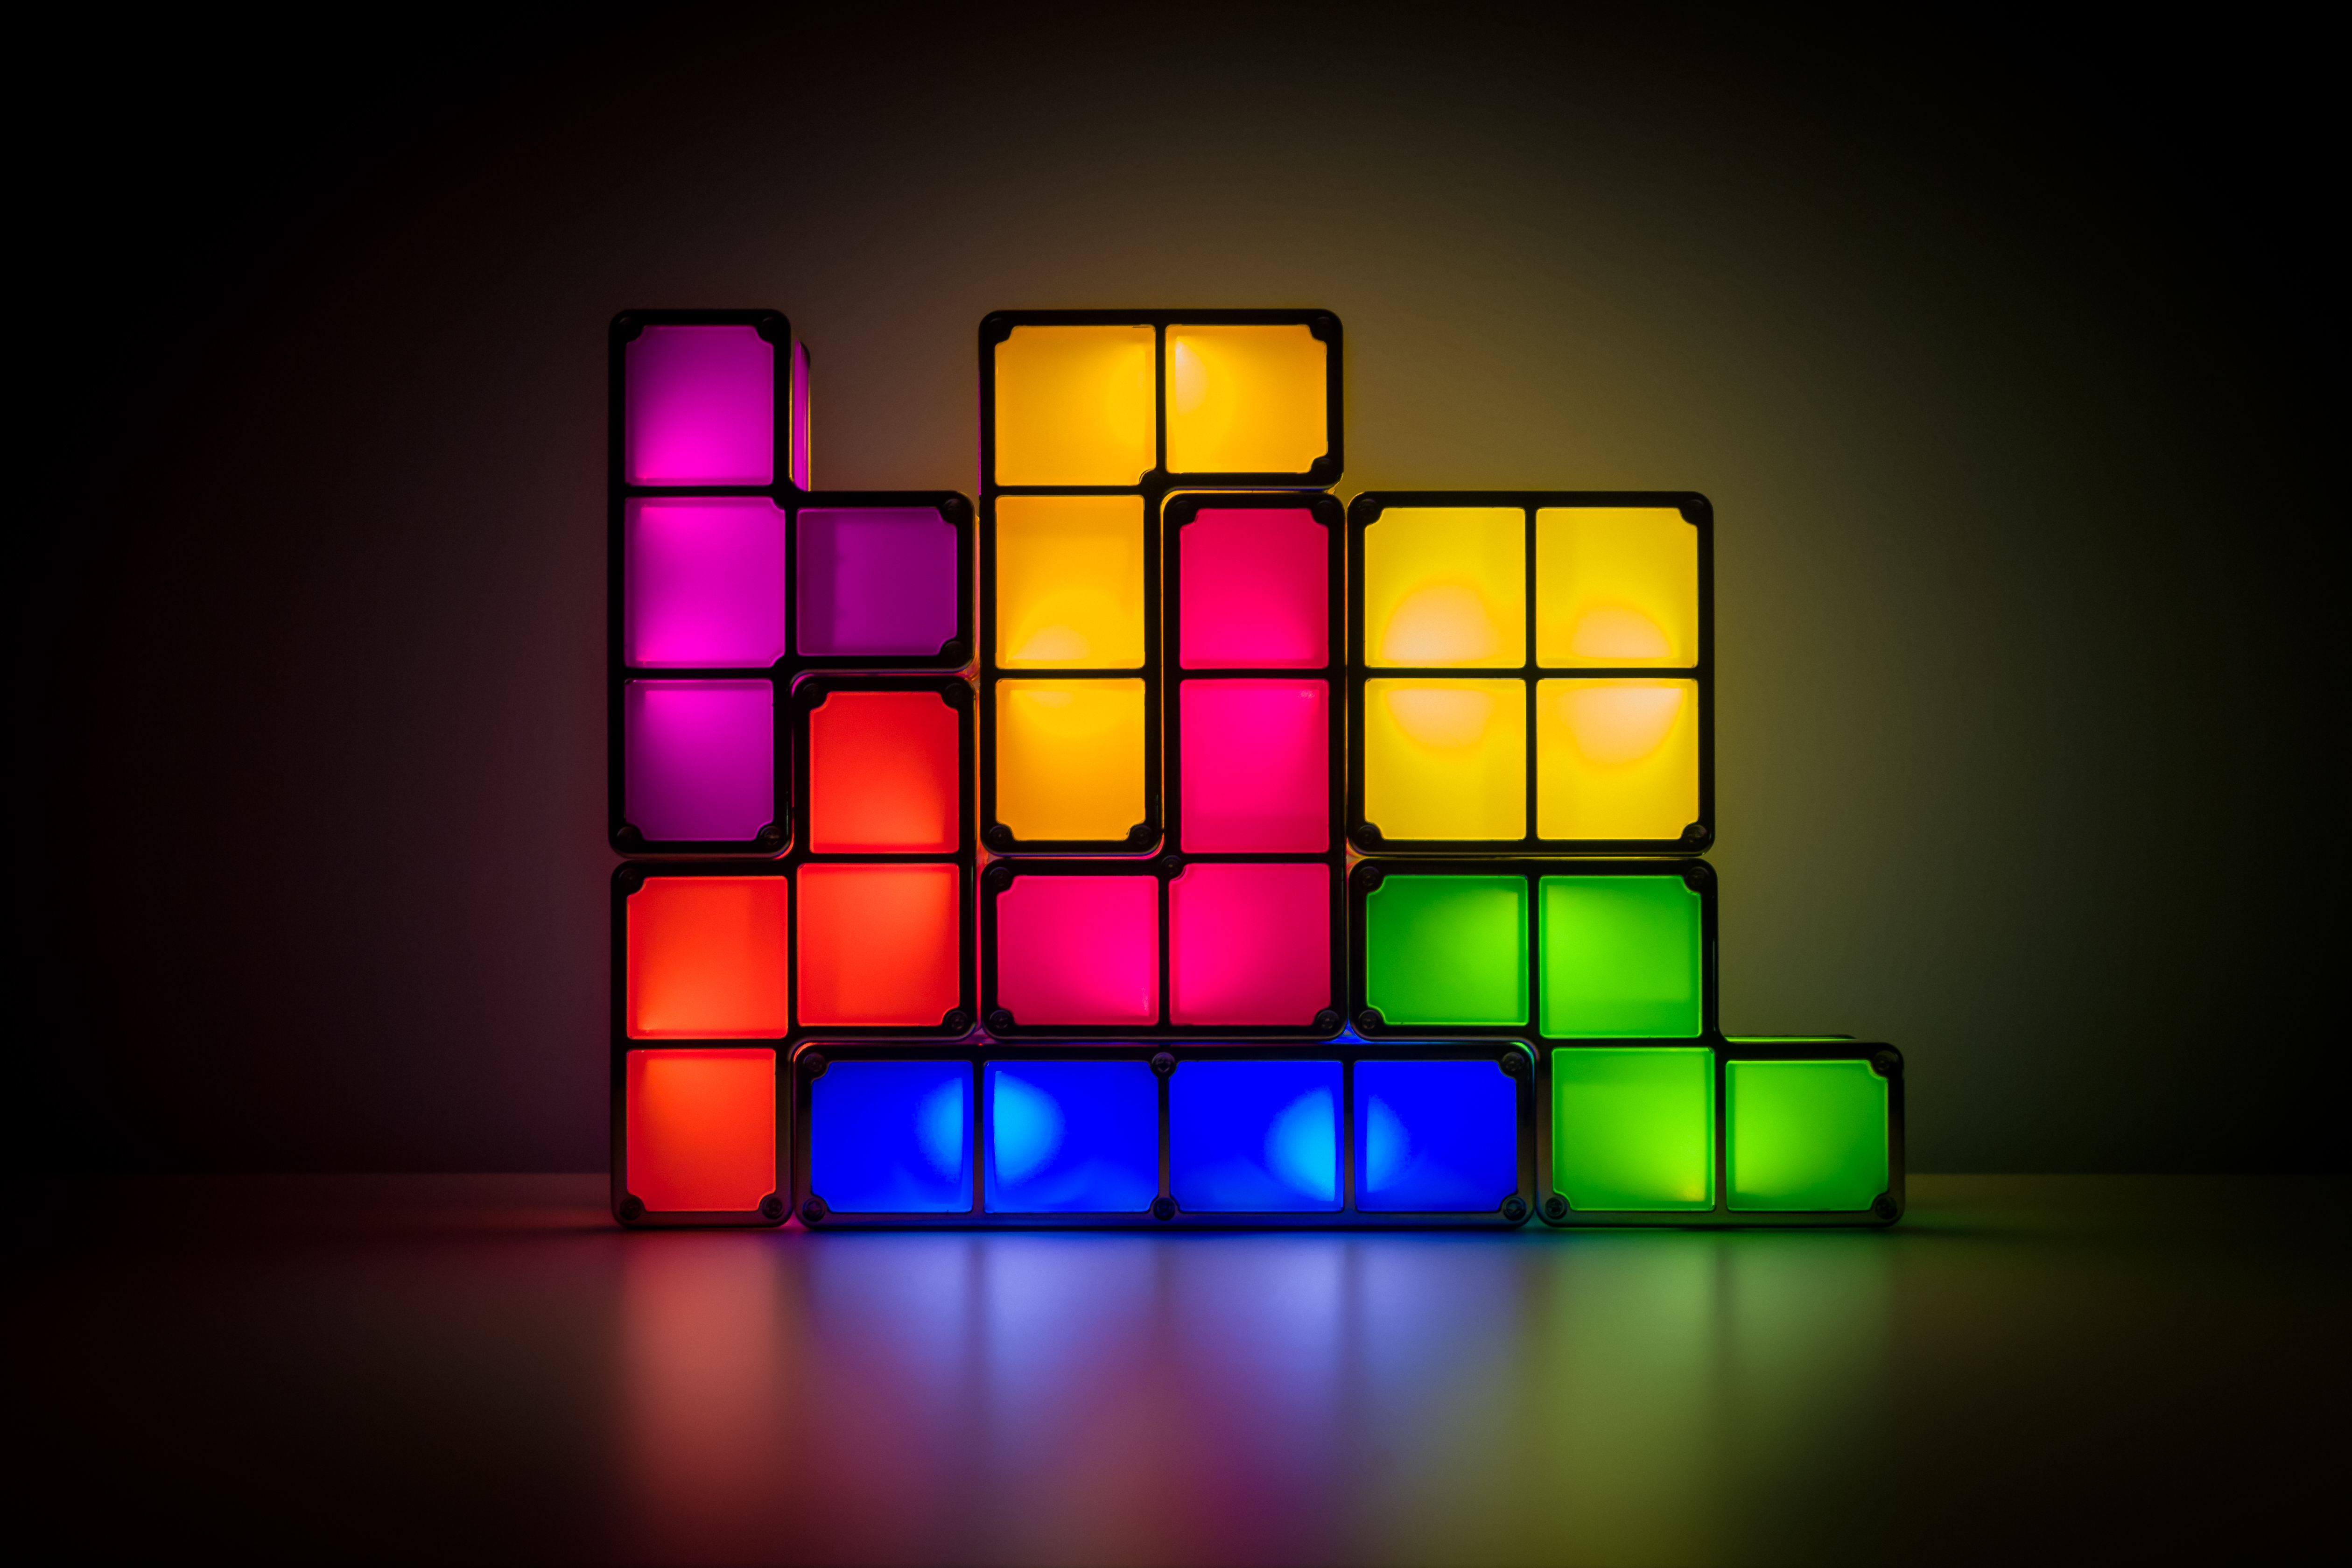 When it comes to traumatic flashbacks, Tetris blocks